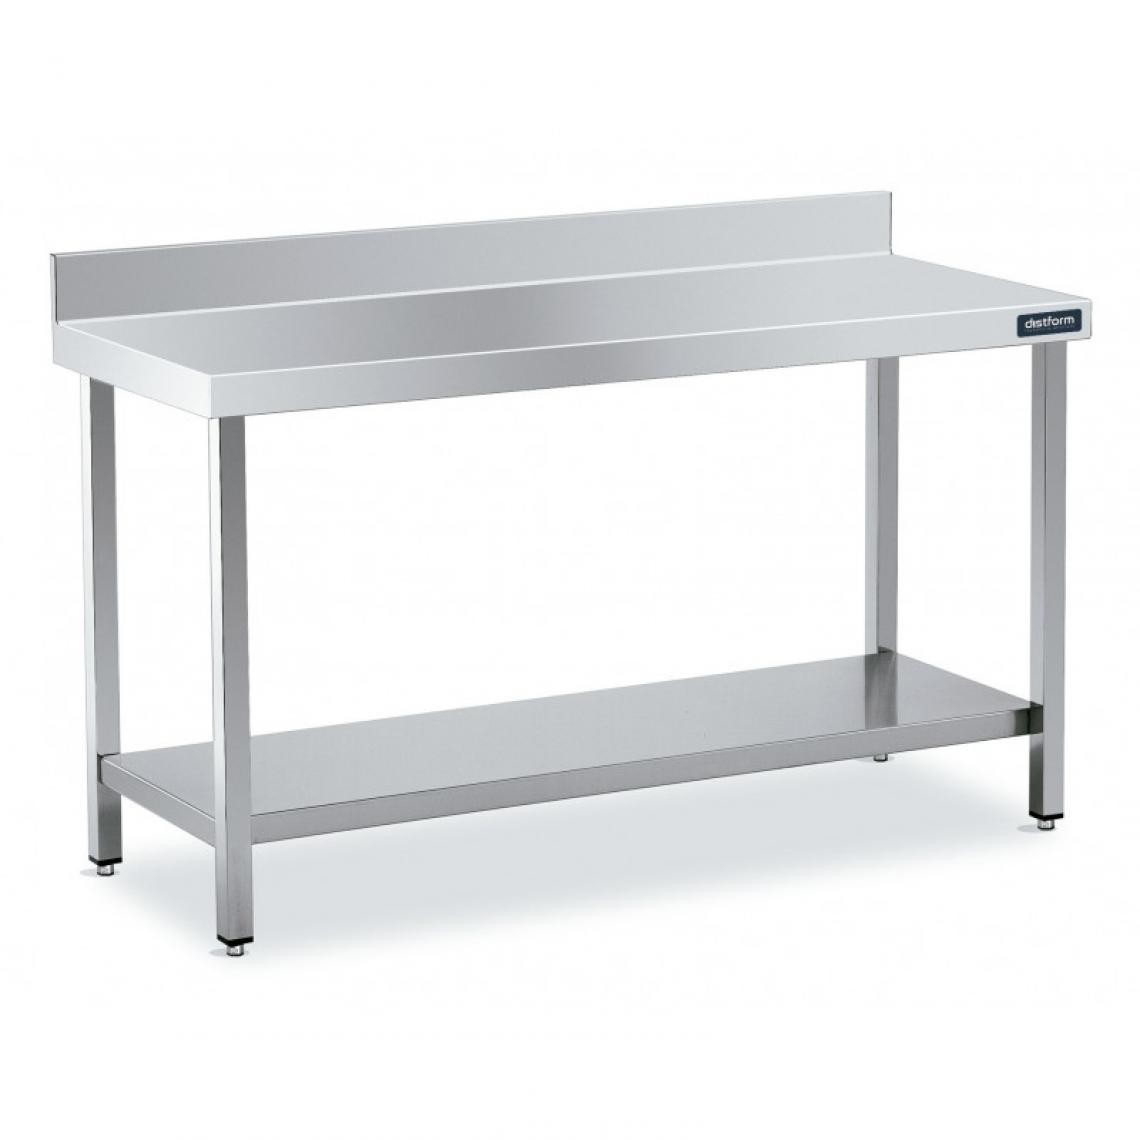 DISTFORM - Table Adossée en Inox avec 1 étagère Profondeur 550 mm - Distform - Acier inoxydable1000x550 - Tables à manger